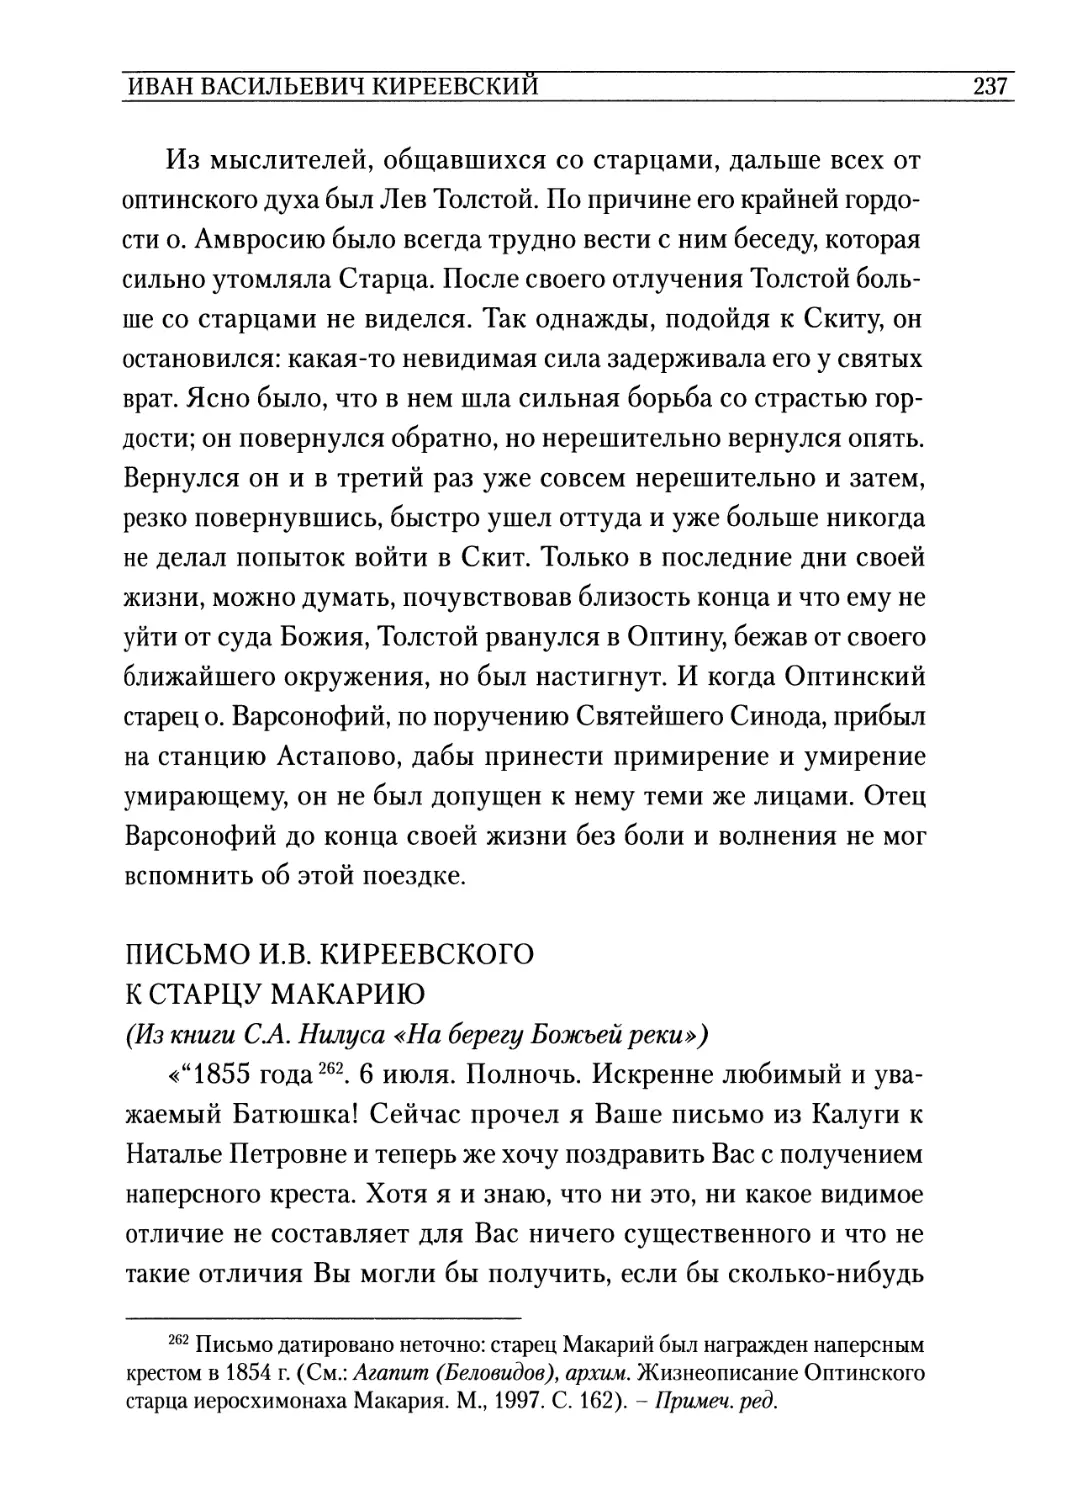 Письмо И. В. Киреевского к старцу Макарию